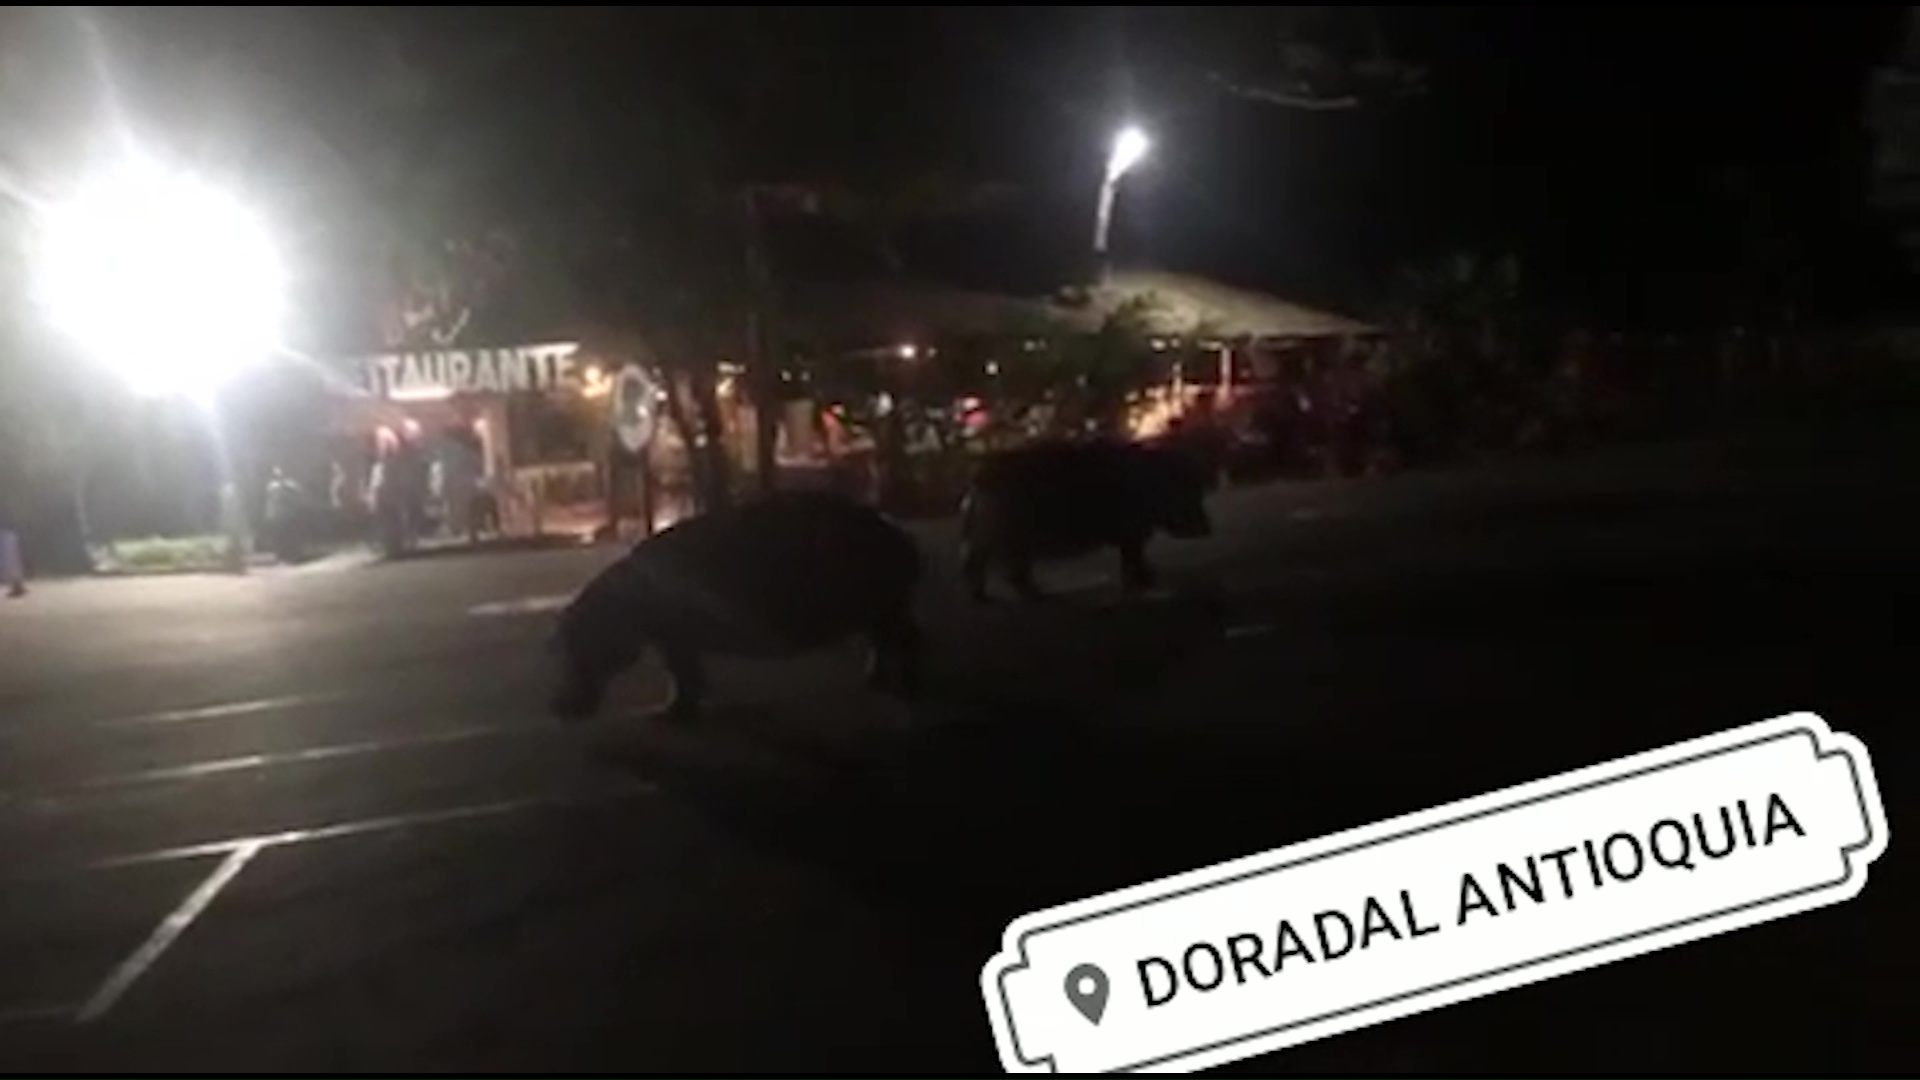 Grabados otros dos hipopótamos en calles de Puerto Triunfo